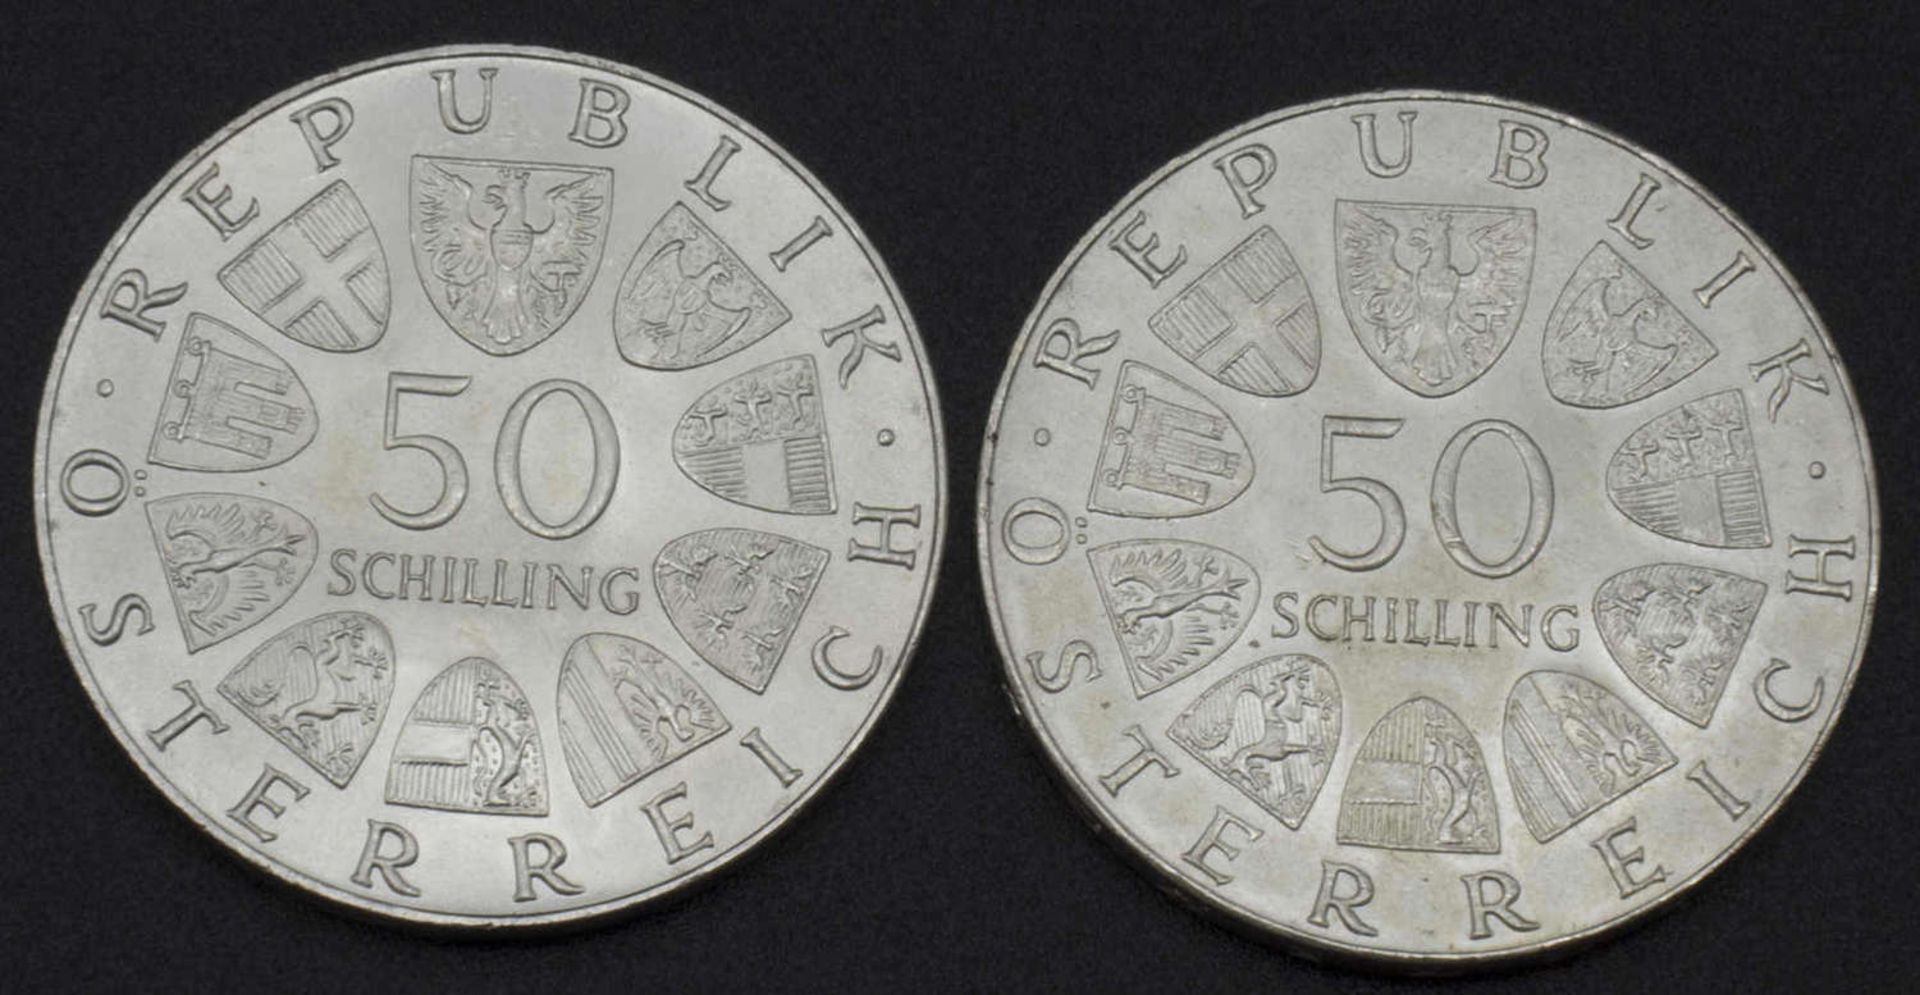 Österreich, 2x 50 Schilling Silbermünzen, 1972Austria, 2x 50 shilling silver coins, 1972 - Bild 2 aus 2